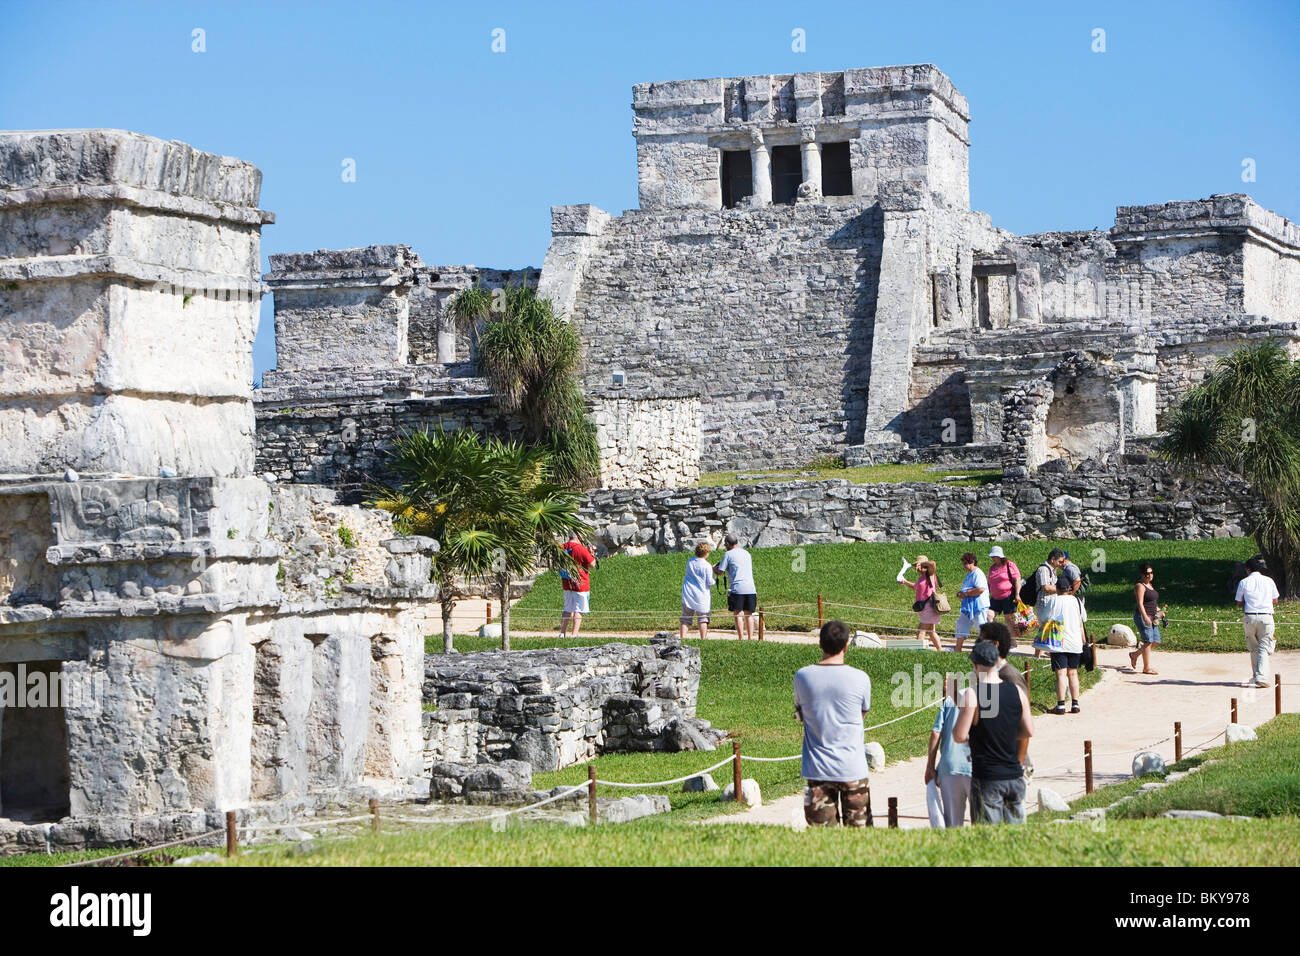 La ruina del templo maya de Tulum, Estado de Quintana Roo, en la península de Yucatán, México Foto de stock